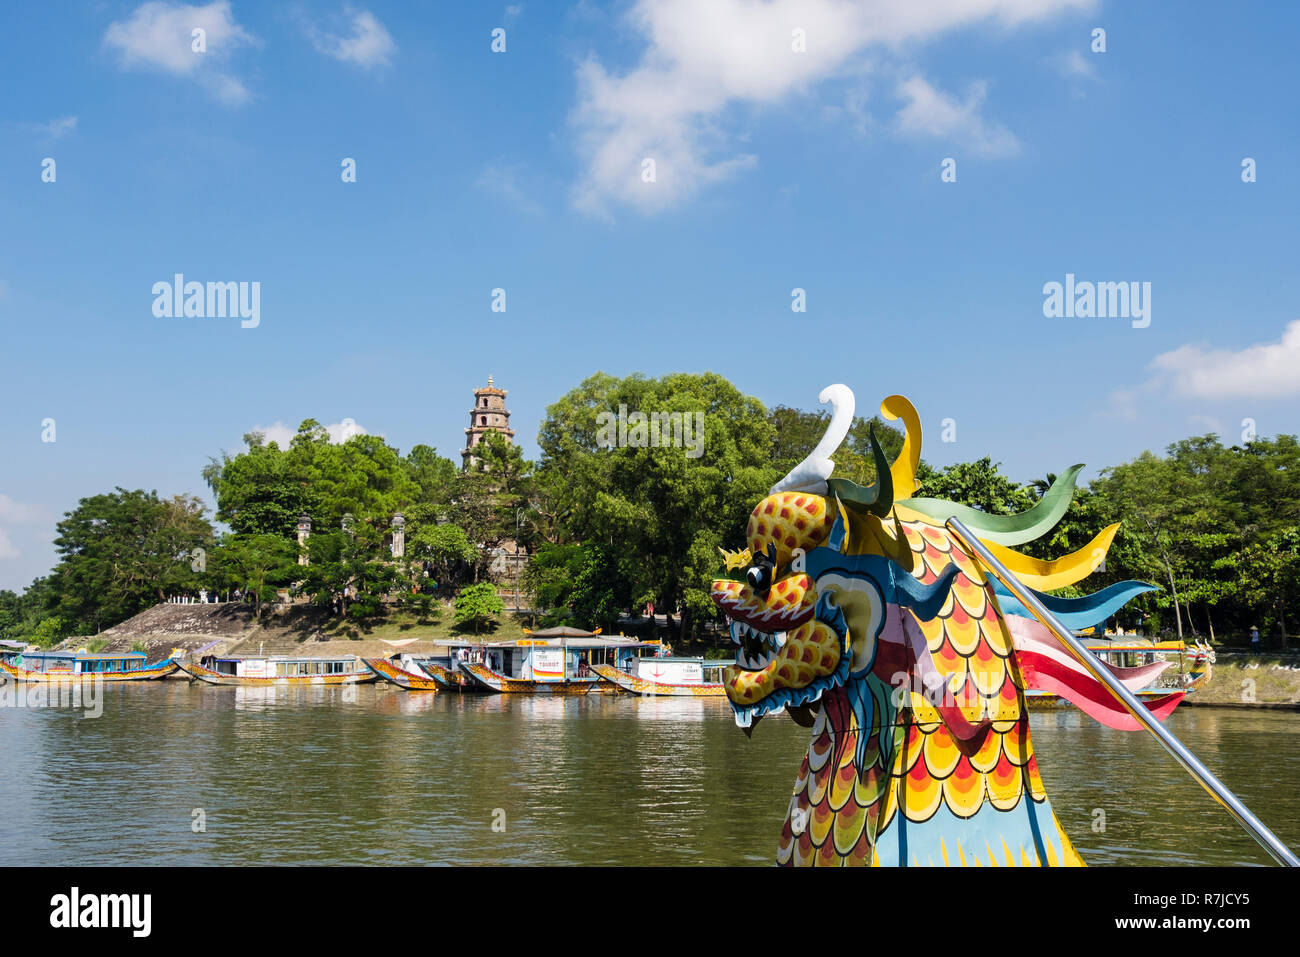 Ansicht der Thien Mu Pagode von einem Touristen Drachenboot Segeln auf den Perfume River. Farbton, Provinz Thua Thien - Hue, Vietnam, Asien Stockfoto